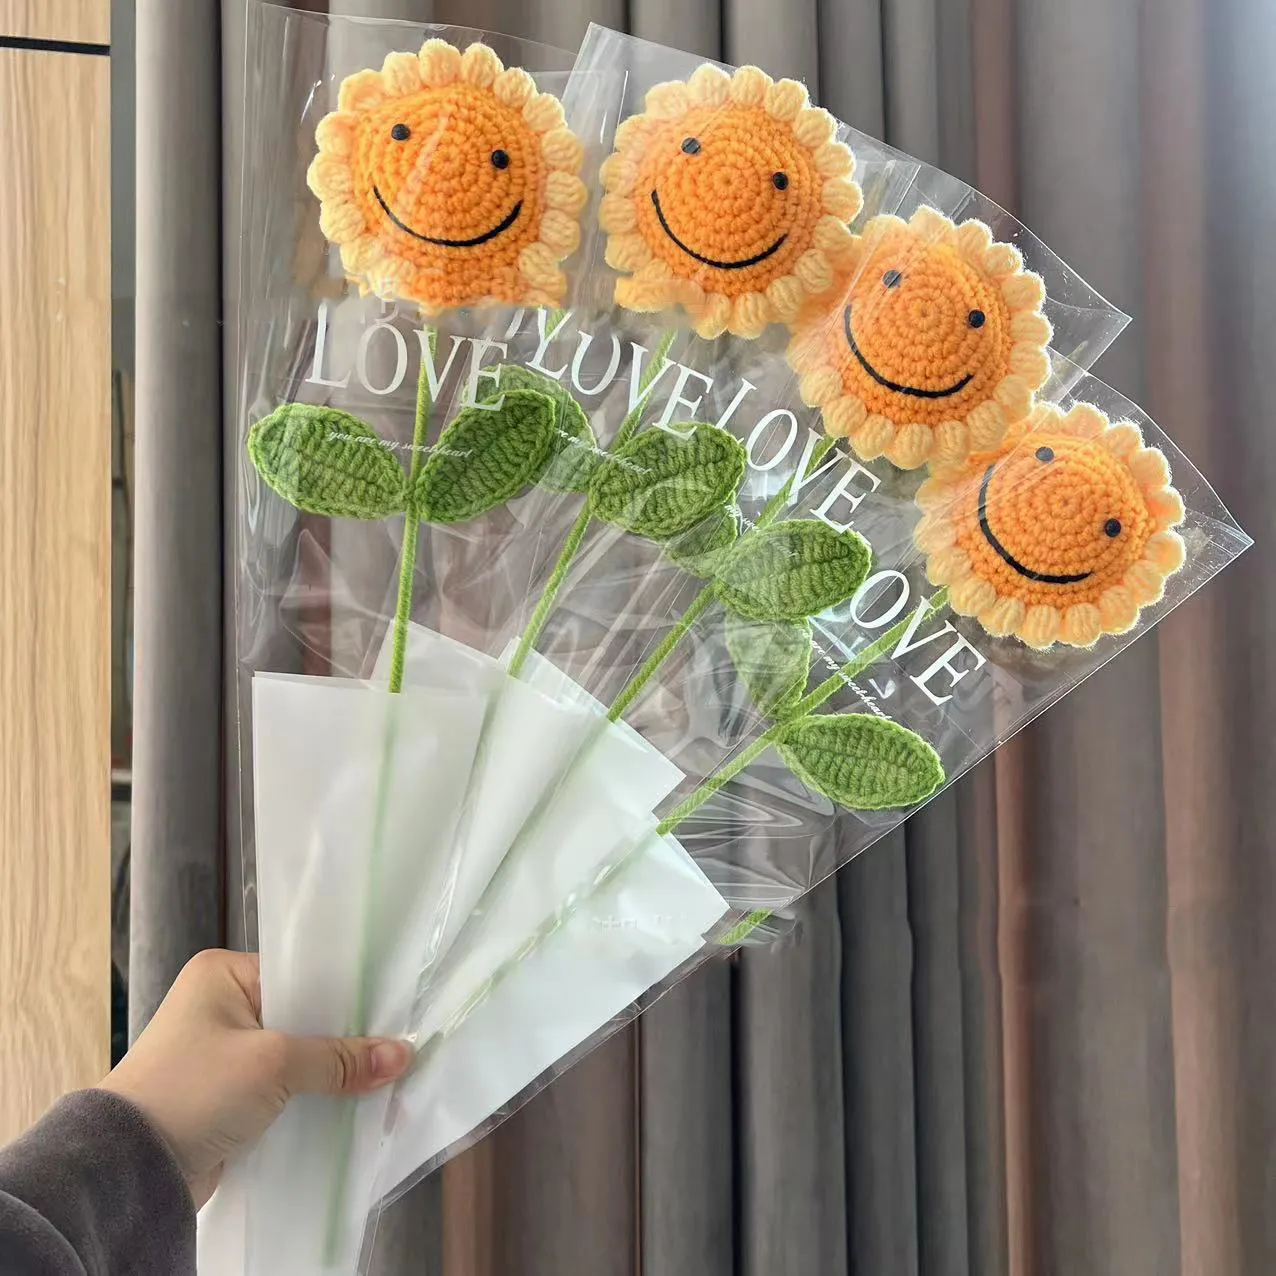 AYOYO OEM hilo de algodón hecho a mano tejido cara sonriente girasol decoración de flores artificiales